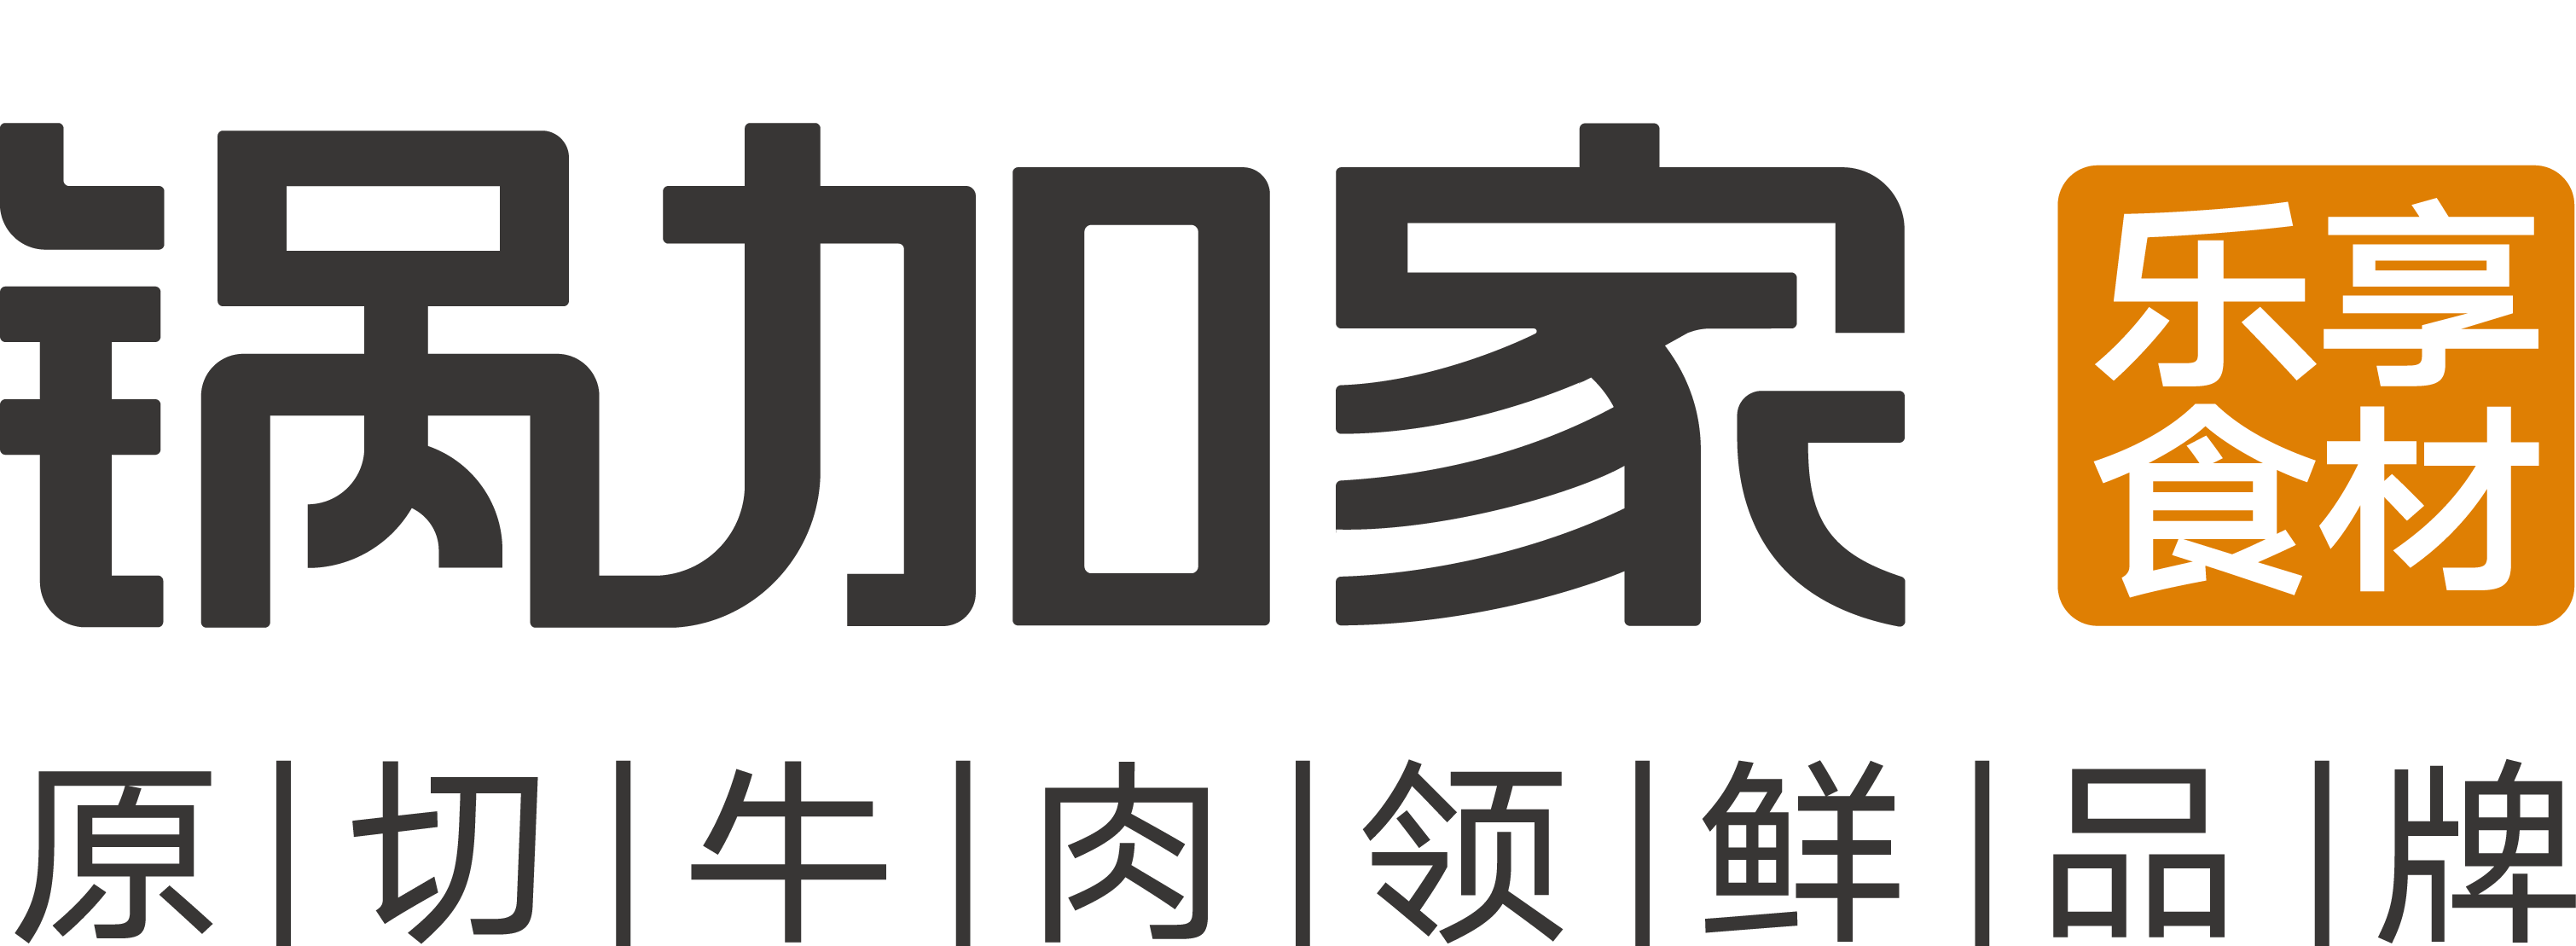 上海鍋加家食品銷售管理有限公司LOGO